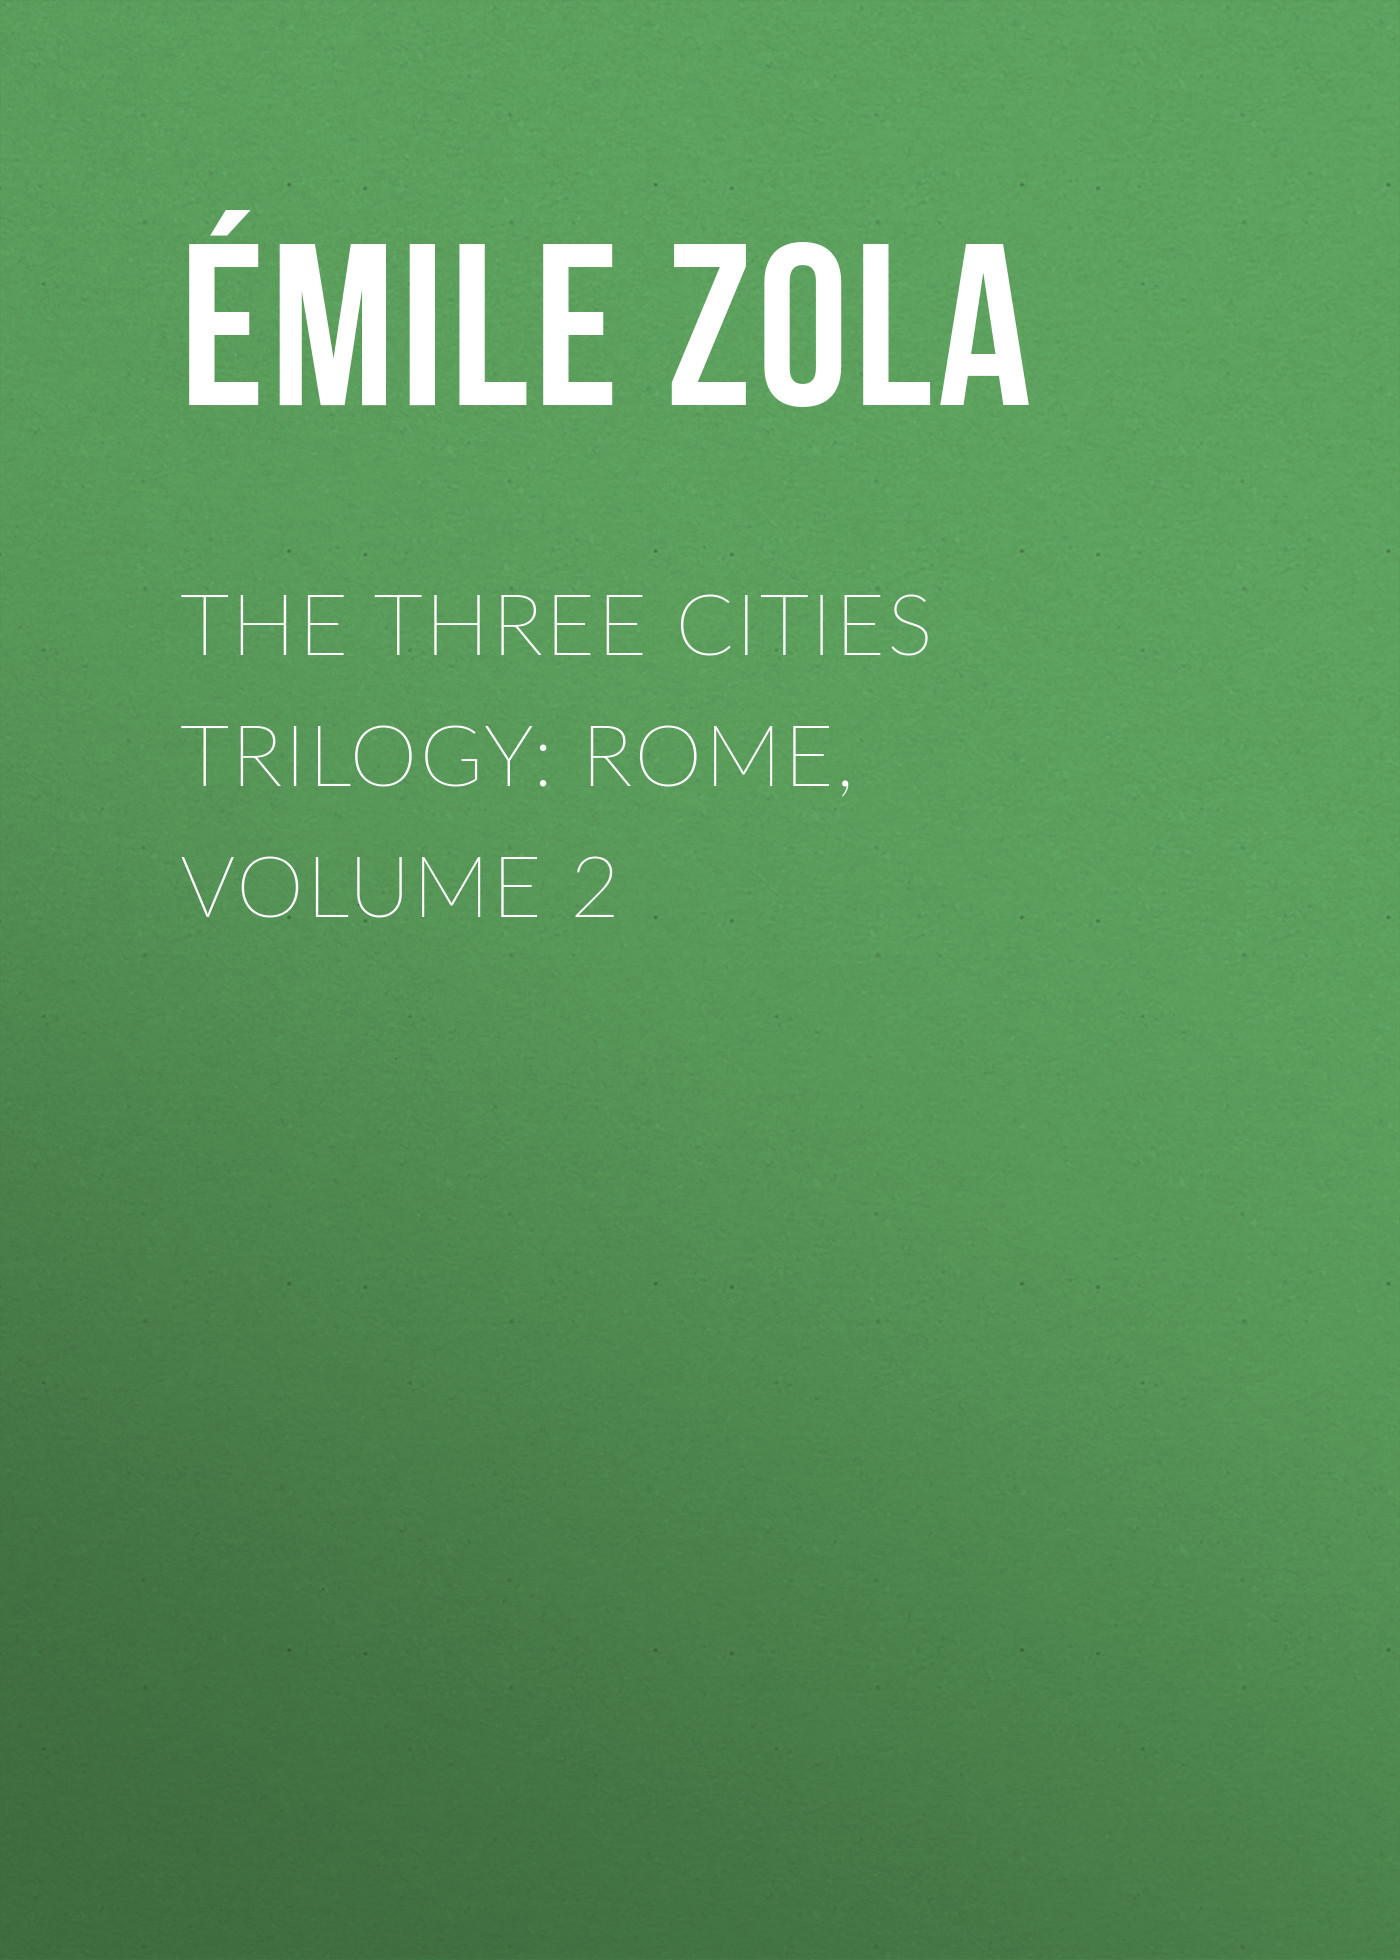 Книга The Three Cities Trilogy: Rome, Volume 2 из серии , созданная Émile Zola, может относится к жанру Литература 19 века, Зарубежная старинная литература, Зарубежная классика. Стоимость электронной книги The Three Cities Trilogy: Rome, Volume 2 с идентификатором 25561436 составляет 0 руб.